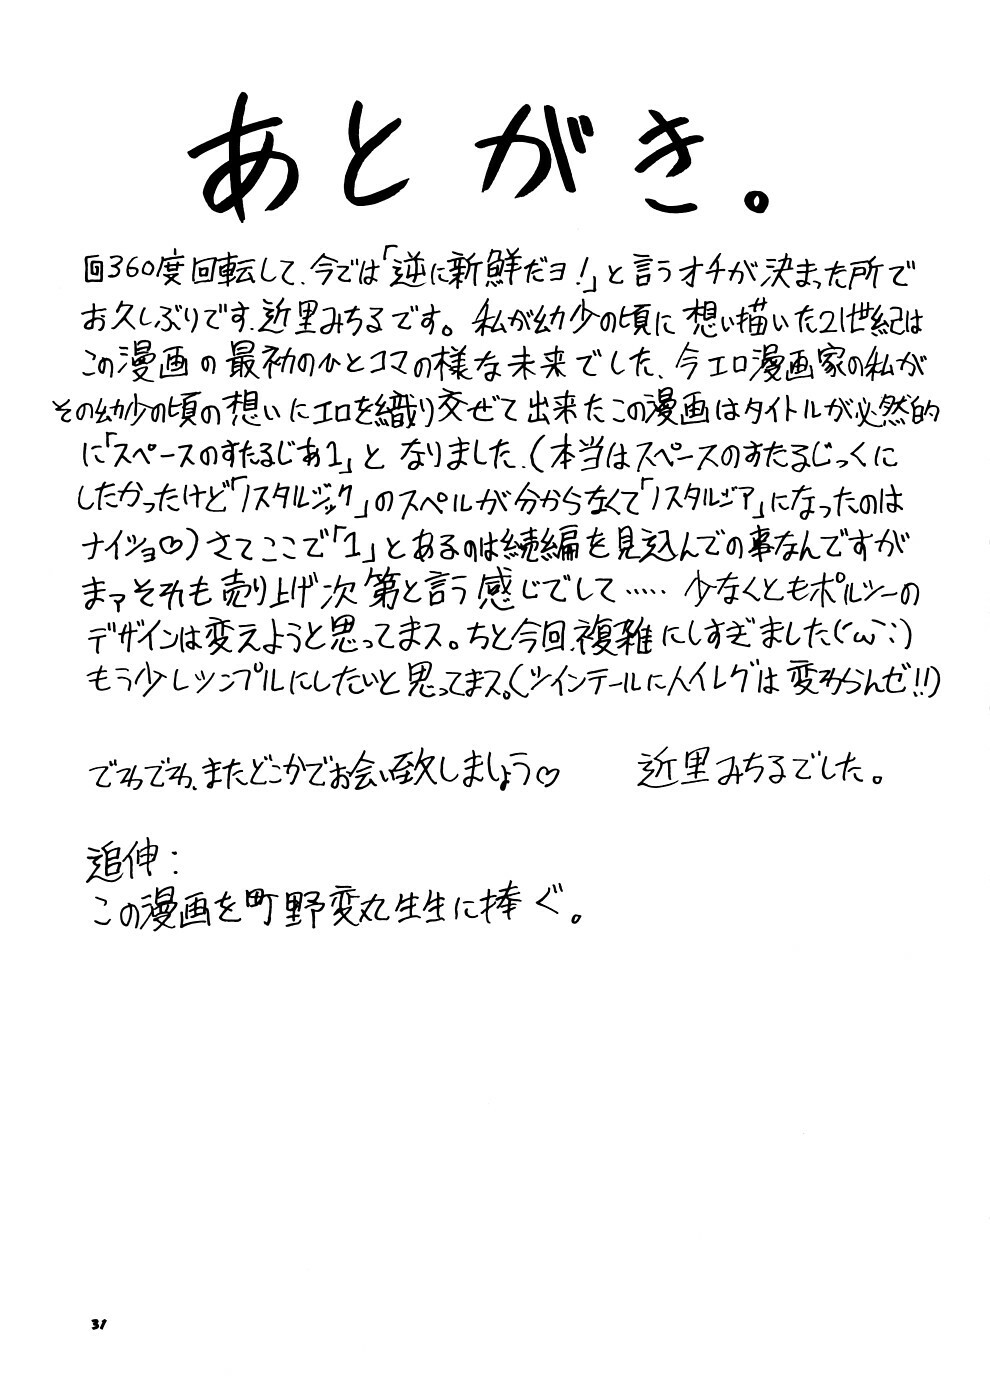 [Sangenshokudou (Chikasato Michiru)] Supēsu no sutaruji a 1 | Space Nostalgia 1 page 30 full